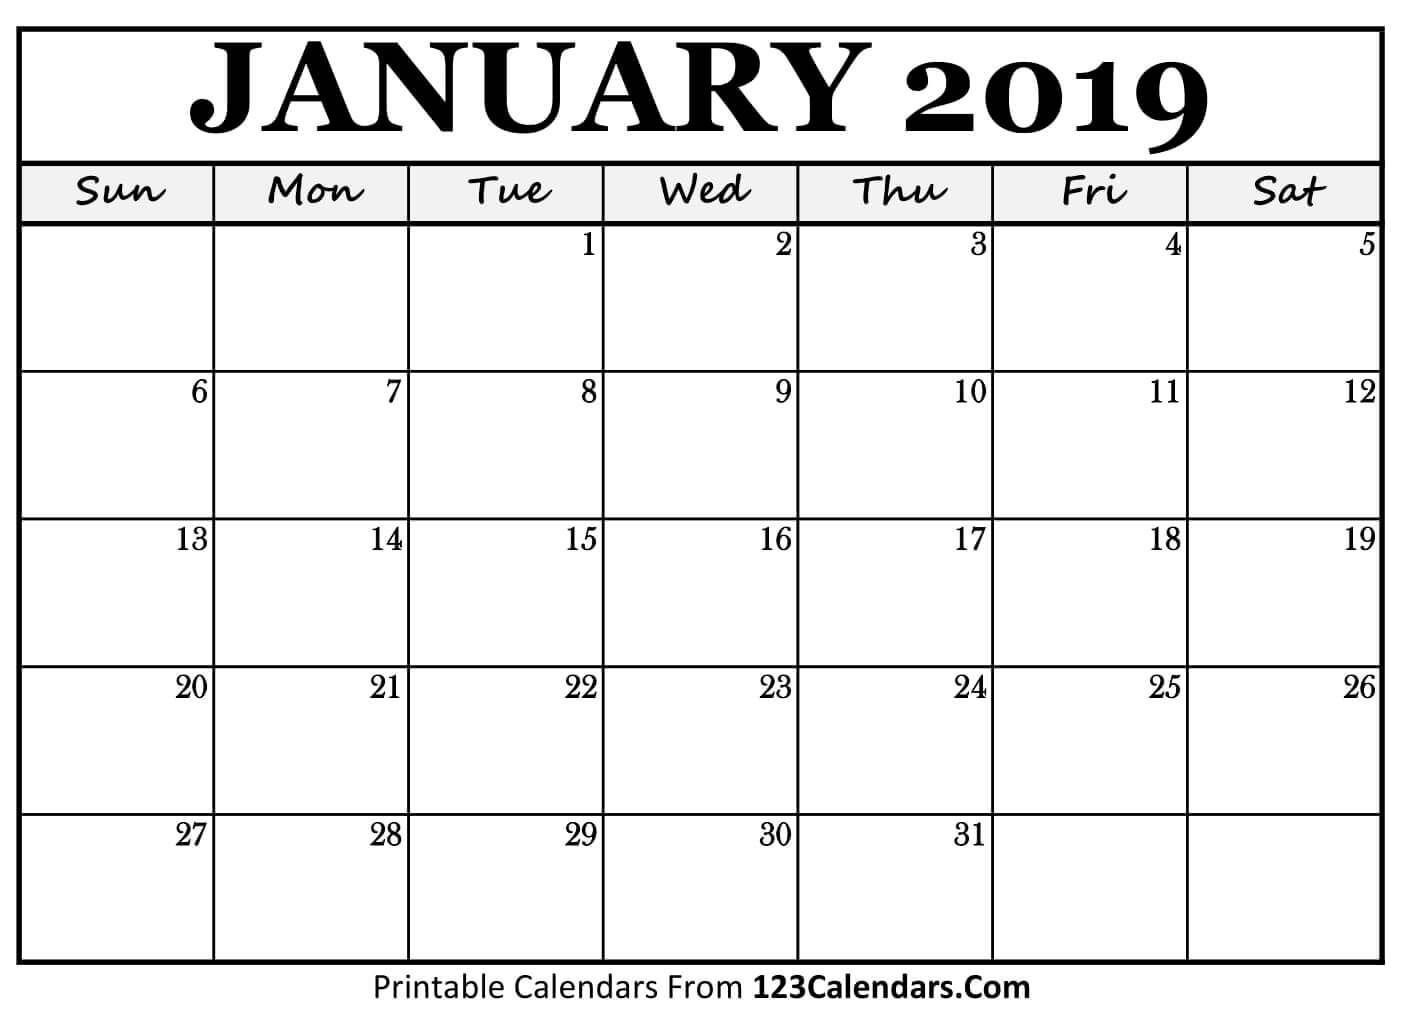 january 2019 calendar templates #printablecalendar #